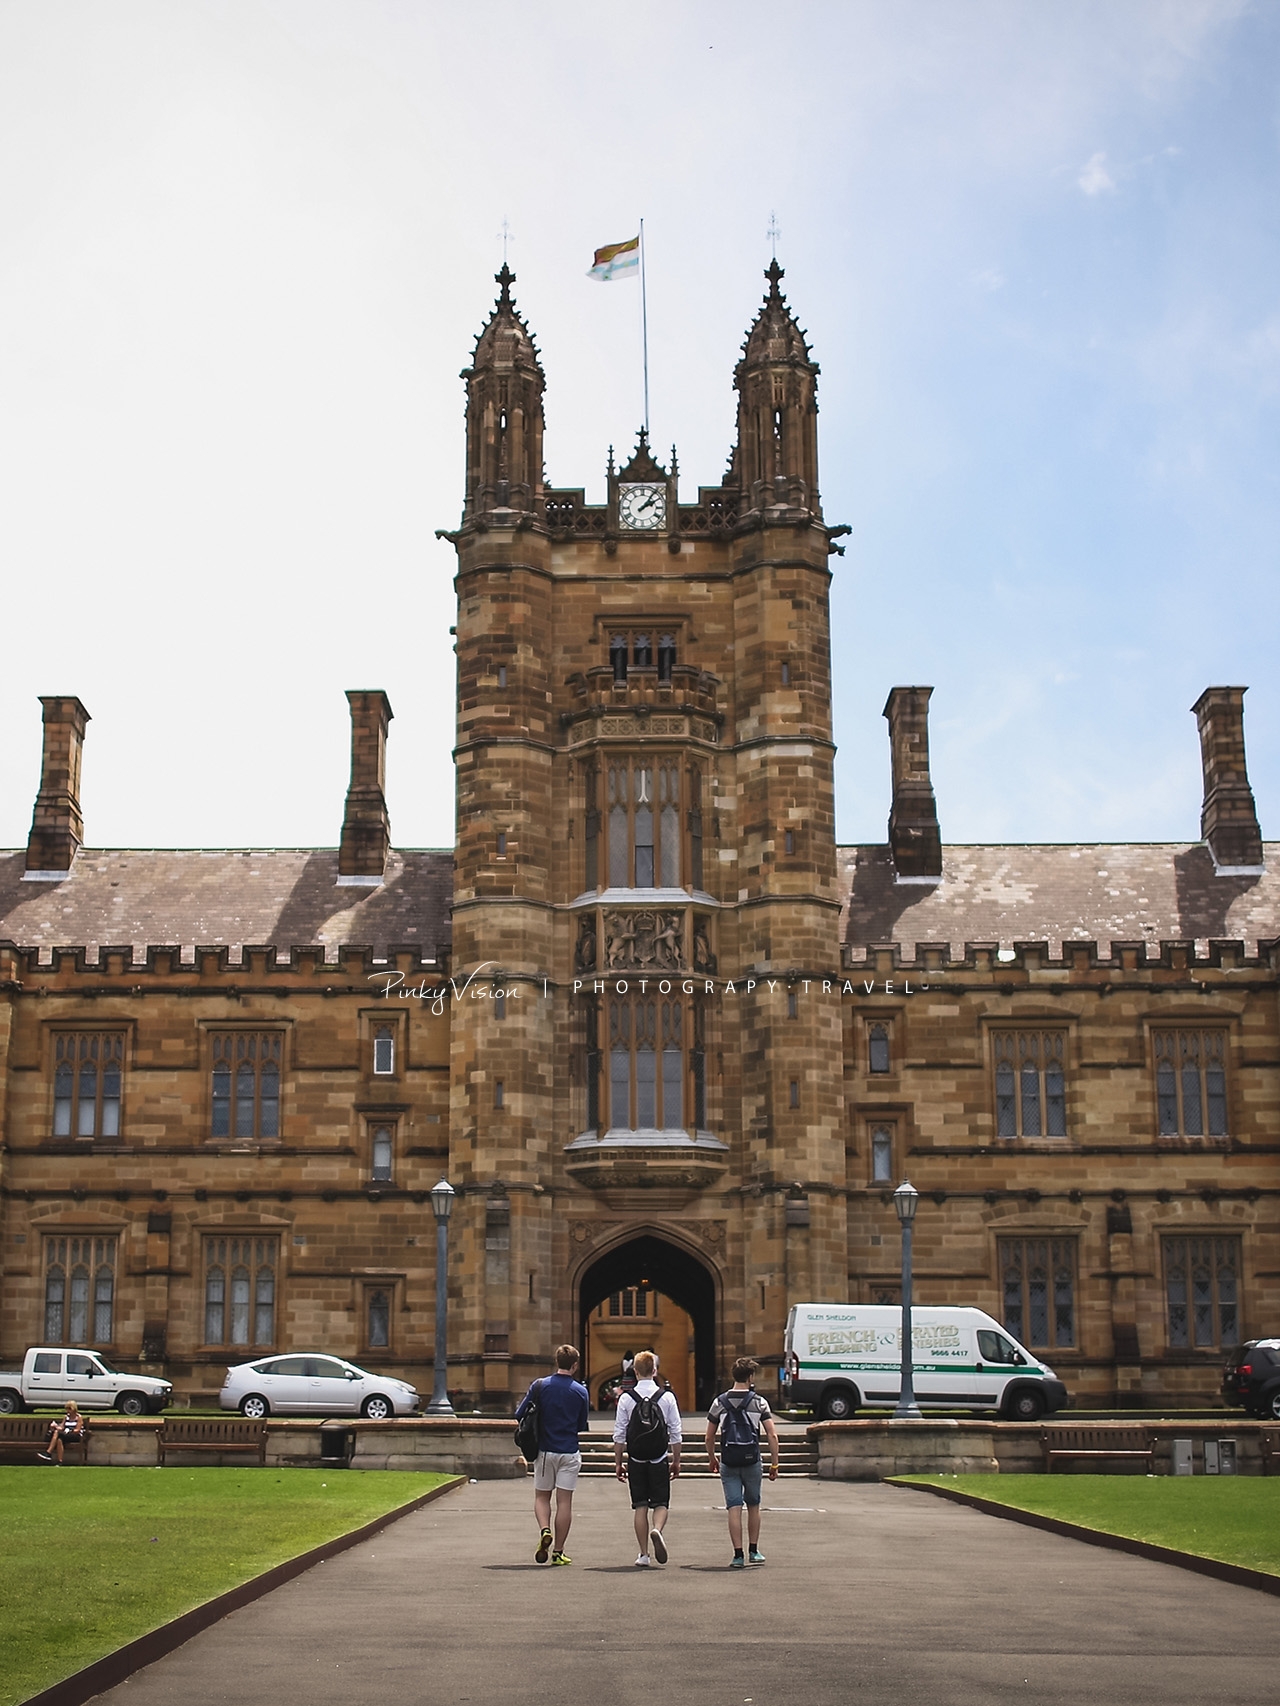 澳大利亚 | 来悉尼大学拍“哈利波特”楼